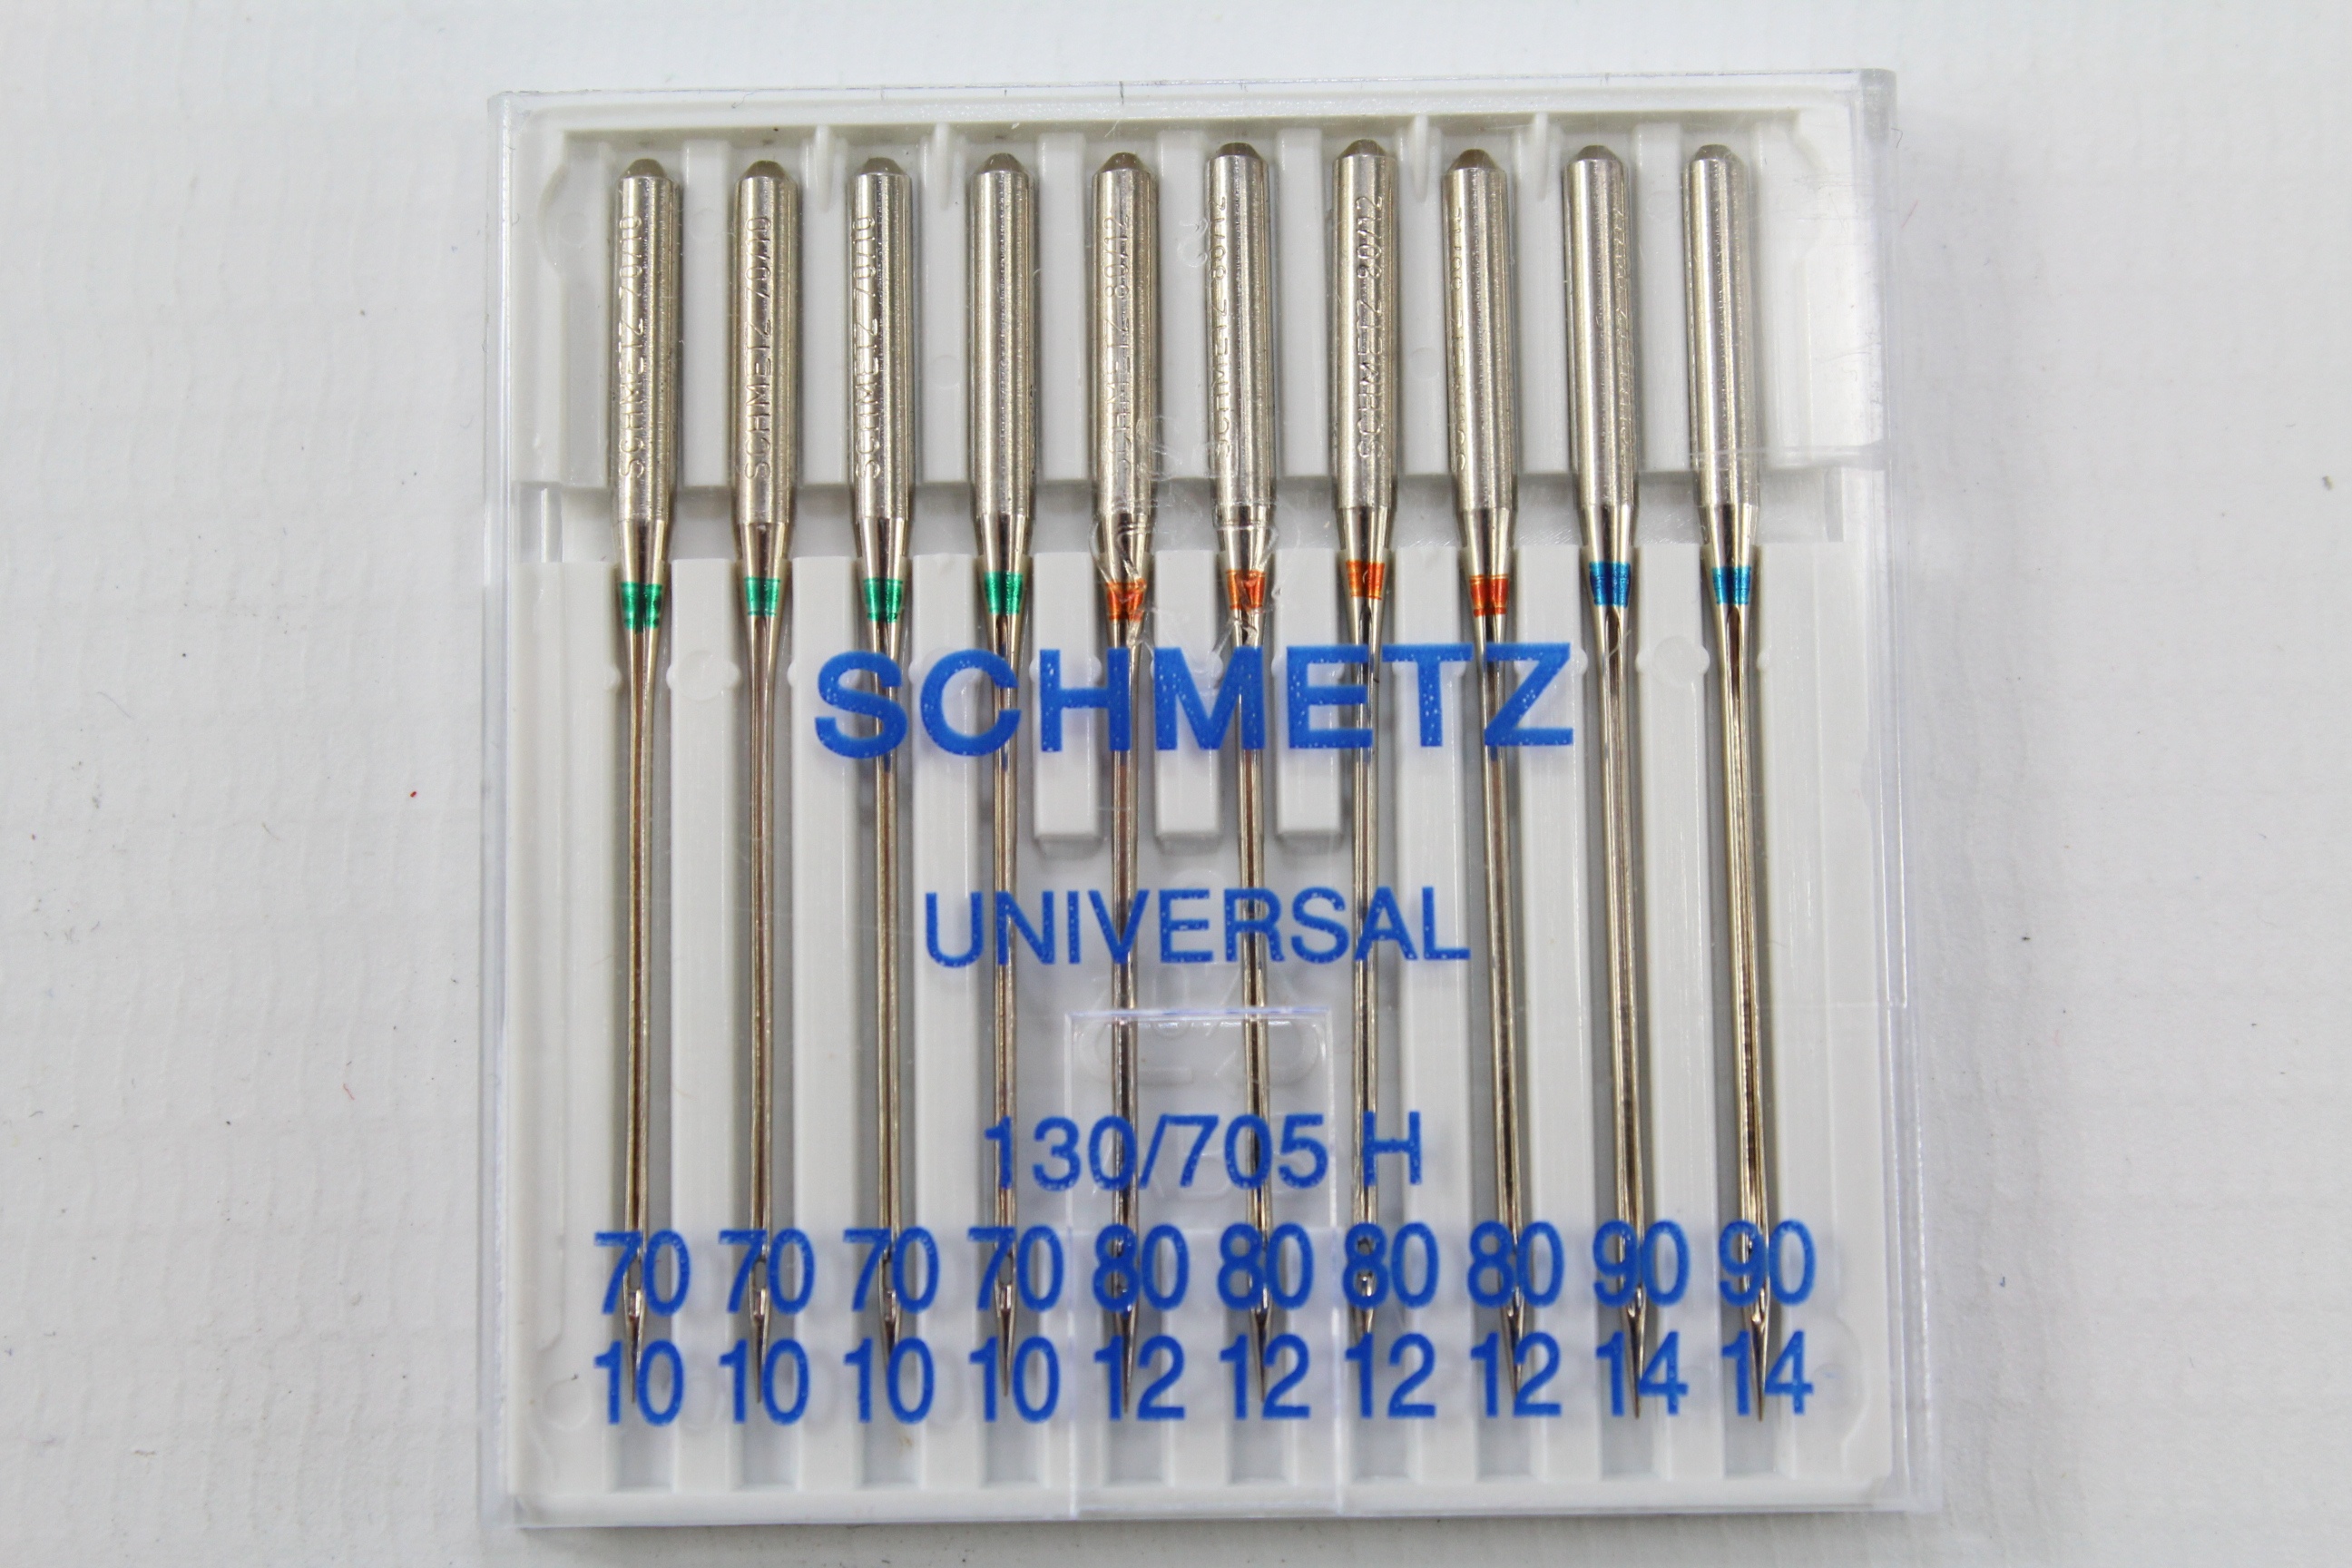 Schmetz Universal 130/705 H 70/10 / 80/12 / 90/14